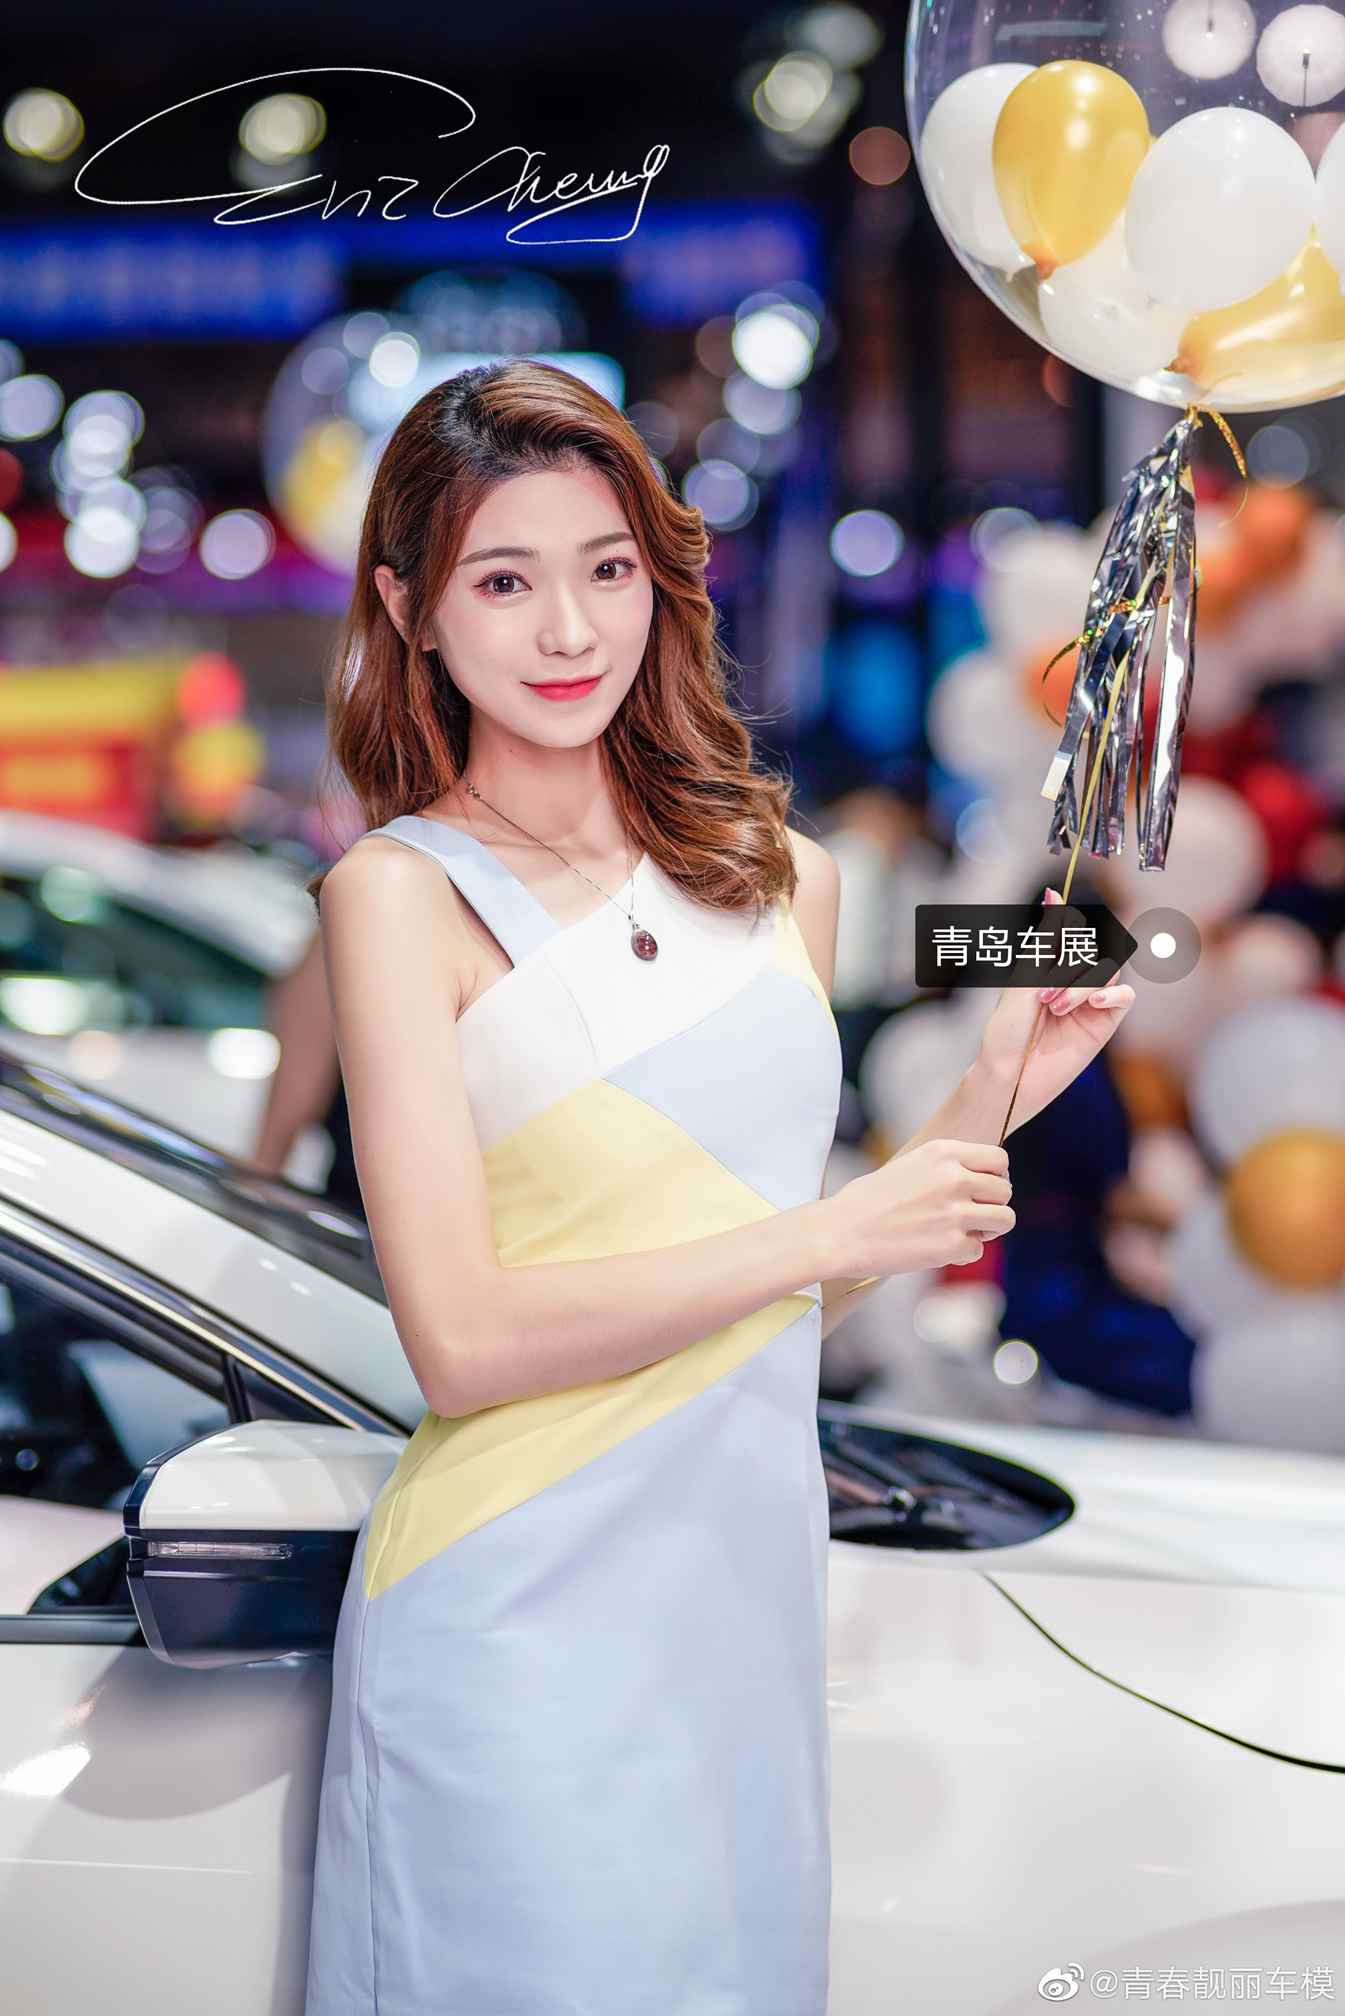 亚洲车模好身材惹火性销魂黄色系艺术图片